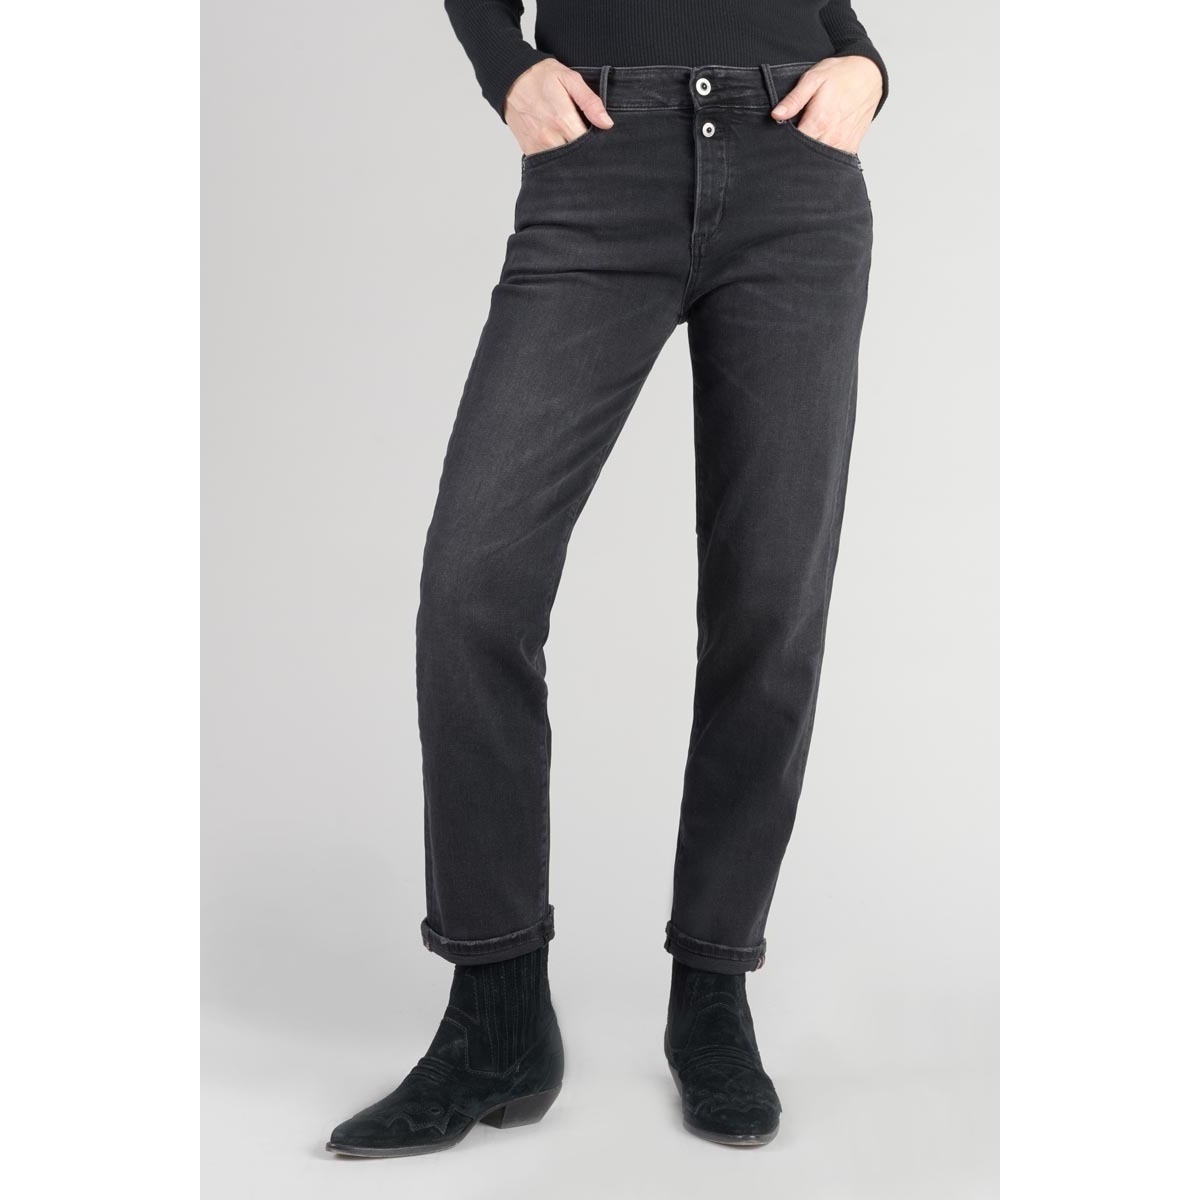 Le Temps des Cerises Noir Basic 400/18 mom taille haute 7/8ème jeans noir 05nY6QSx